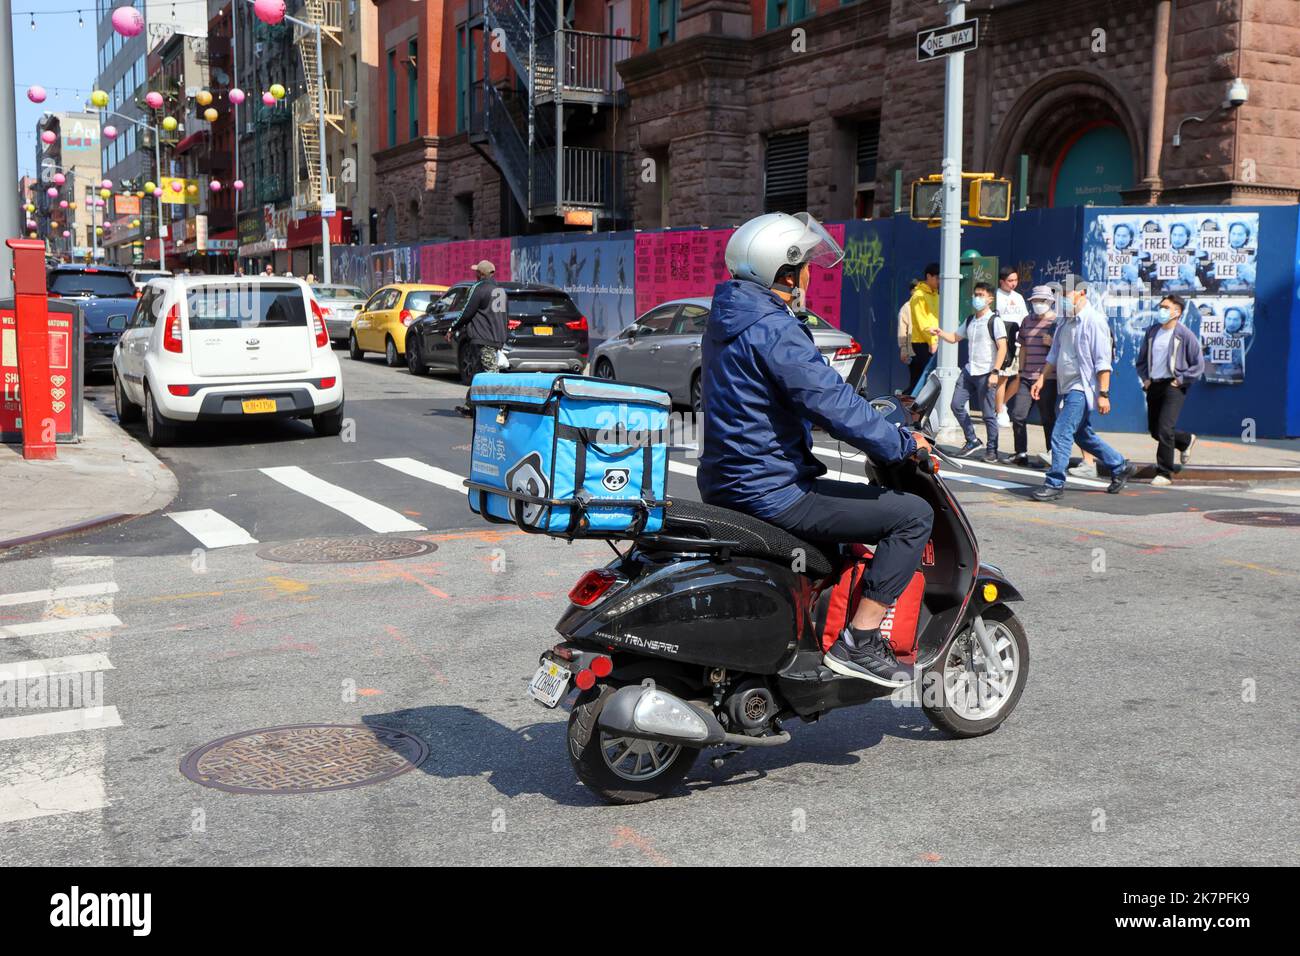 Ein HungryPanda Essenslieferant auf einem Moped in Manhattan Chinatown, New York, September 2022. Hungry Panda 熊貓外賣 asiatische Essenslieferung Stockfoto